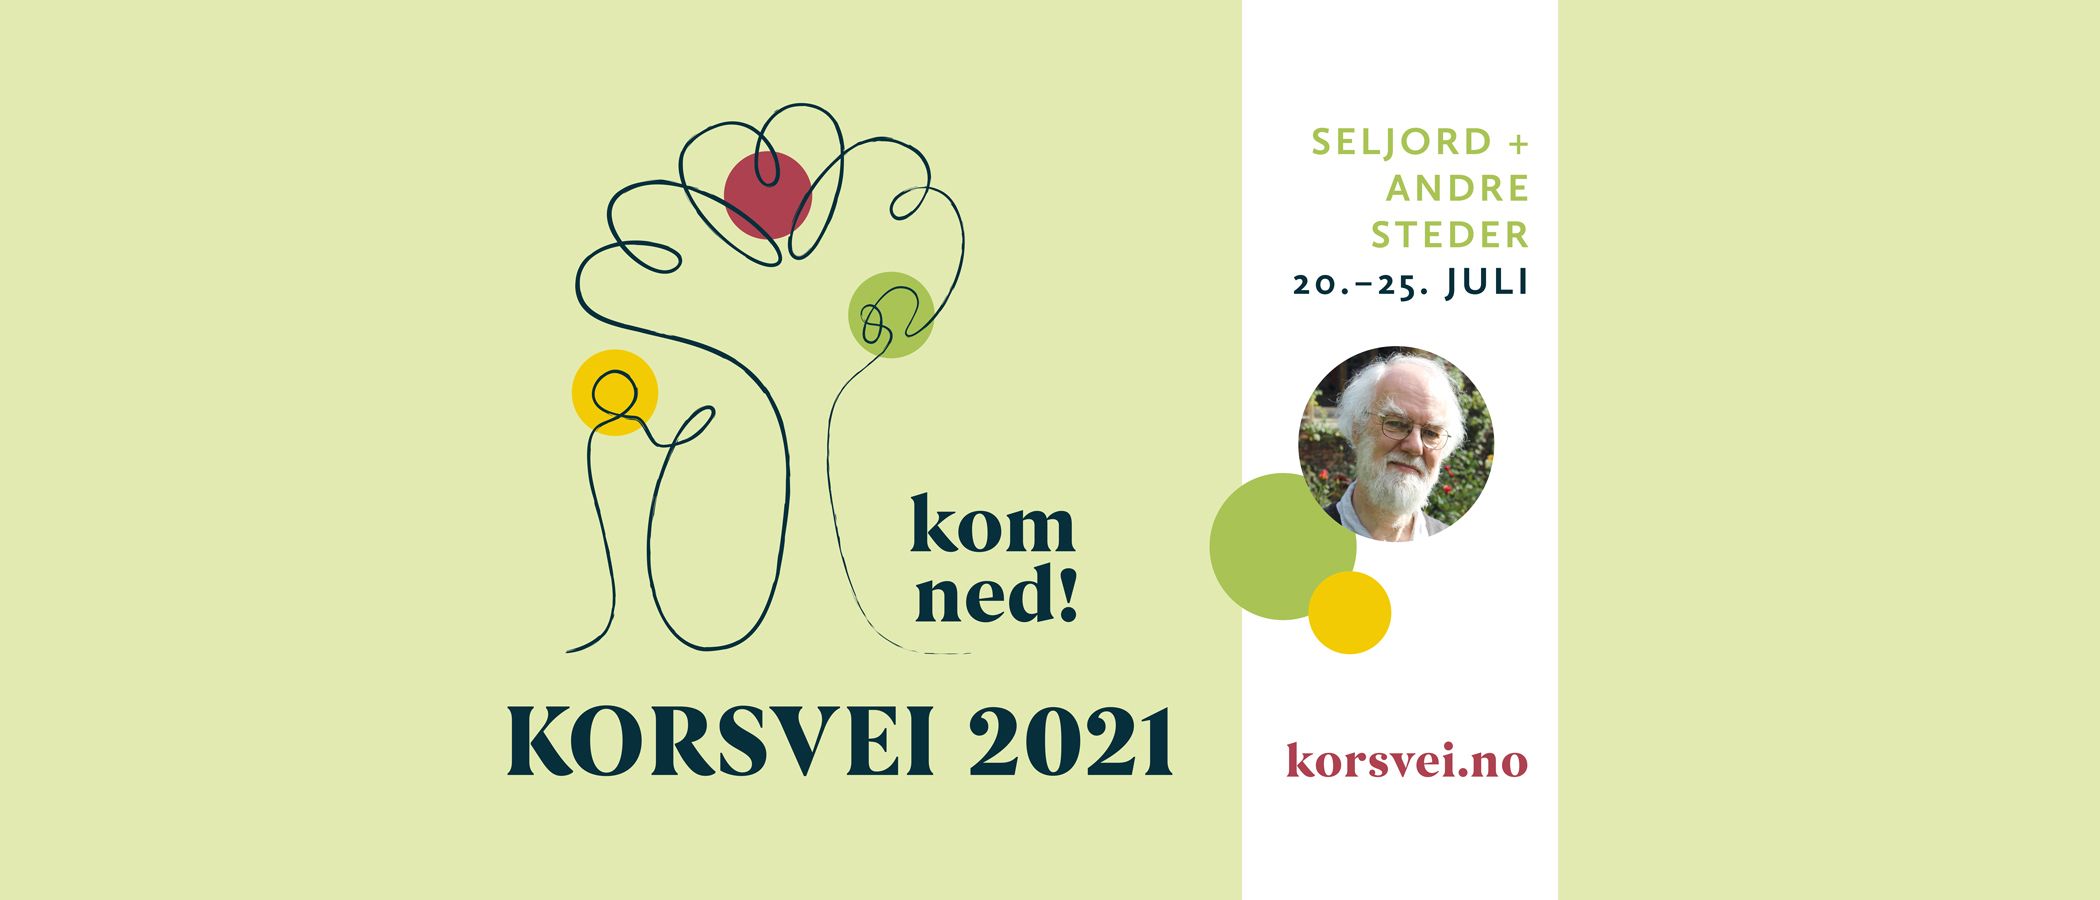 Korsveifestivalen 2021: Kom ned! Vi gleder oss til 20.-25. juli. Link til påmelding i bildet!